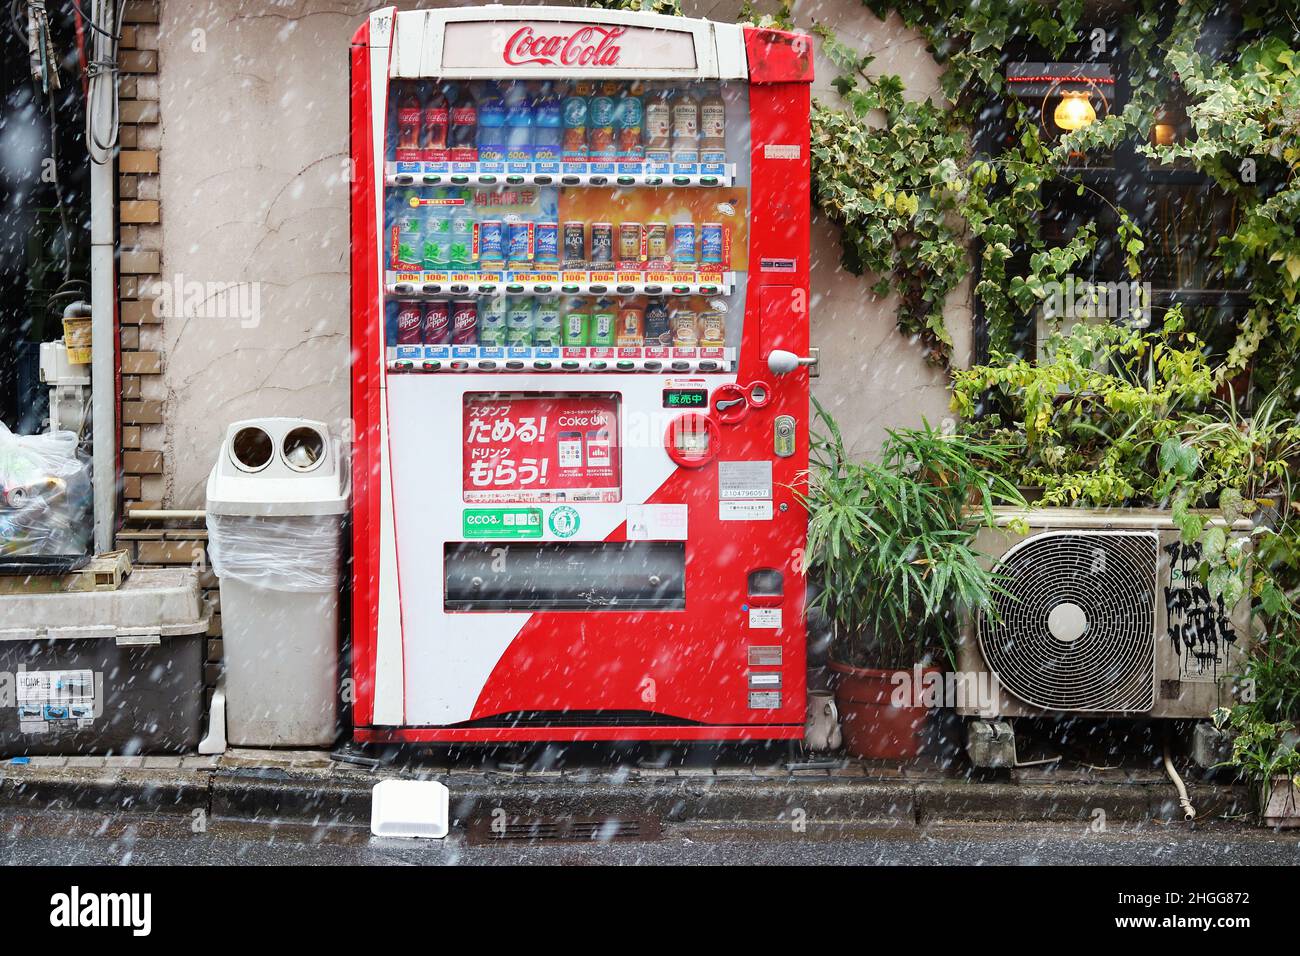 CHIBA, JAPAN - 6. Januar 2022: Ein Getränkeautomat mit Coca-Cola-Lackierung  in Chiba City an einem verschneiten Tag Stockfotografie - Alamy